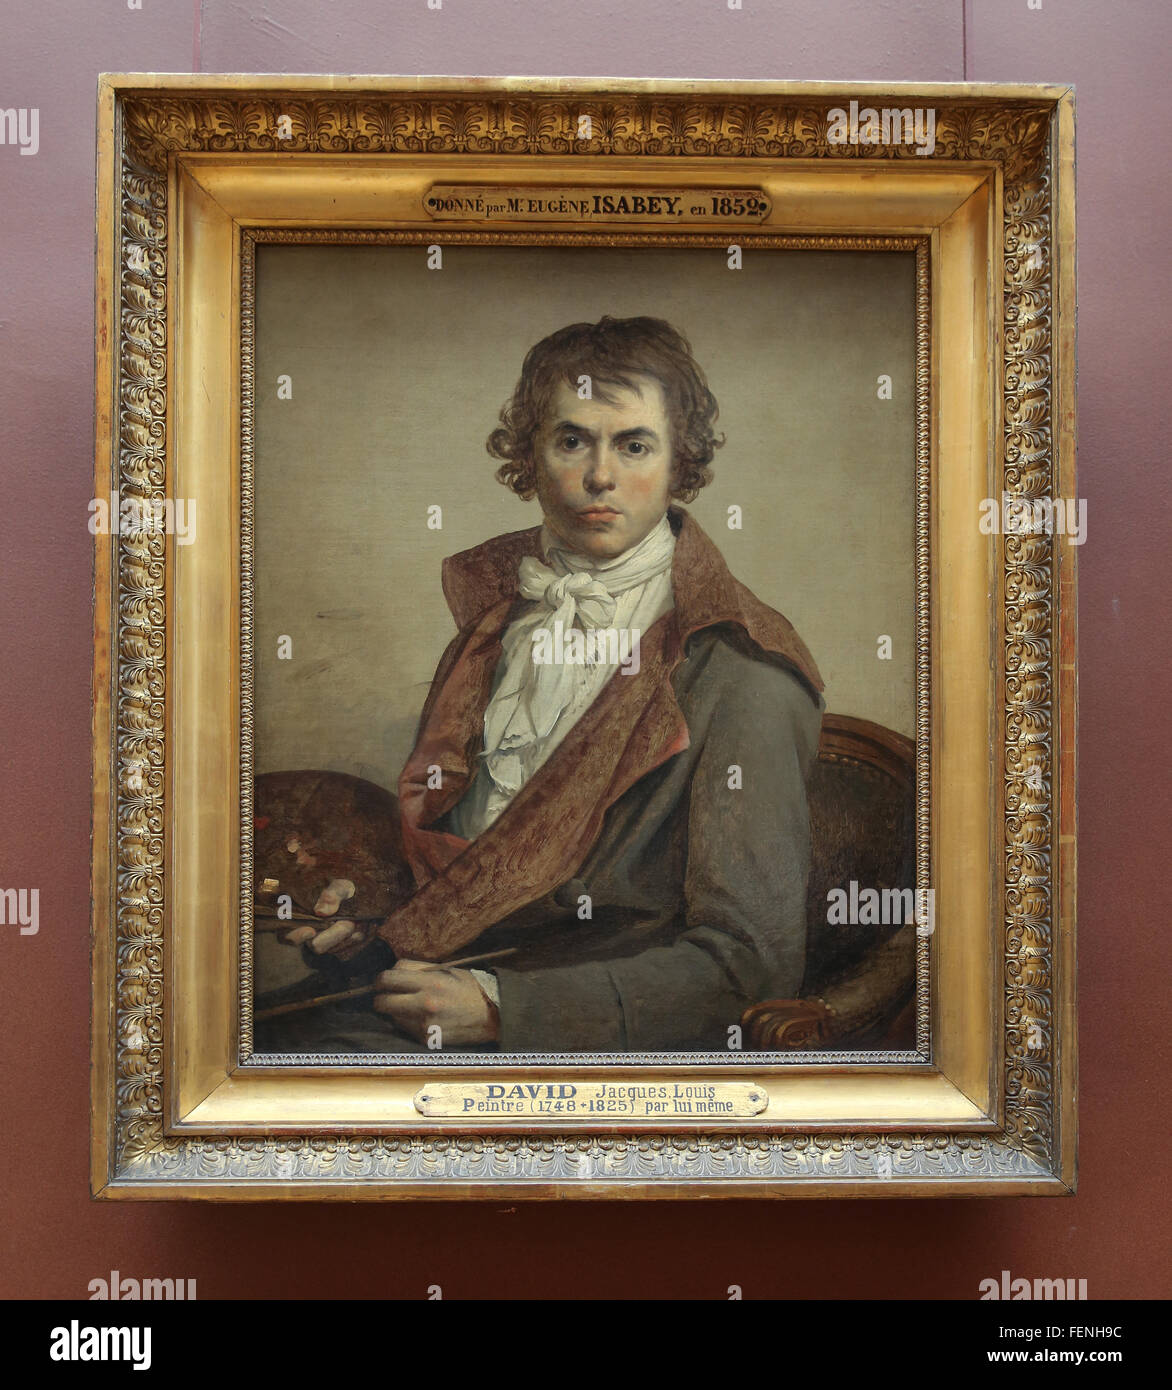 Jacques-Louis David (1748-1825). Französischer Maler. Klassizistischen Stil. Selbstportrait. 1794. Louvre Museum. Frankreich. Paris. Stockfoto